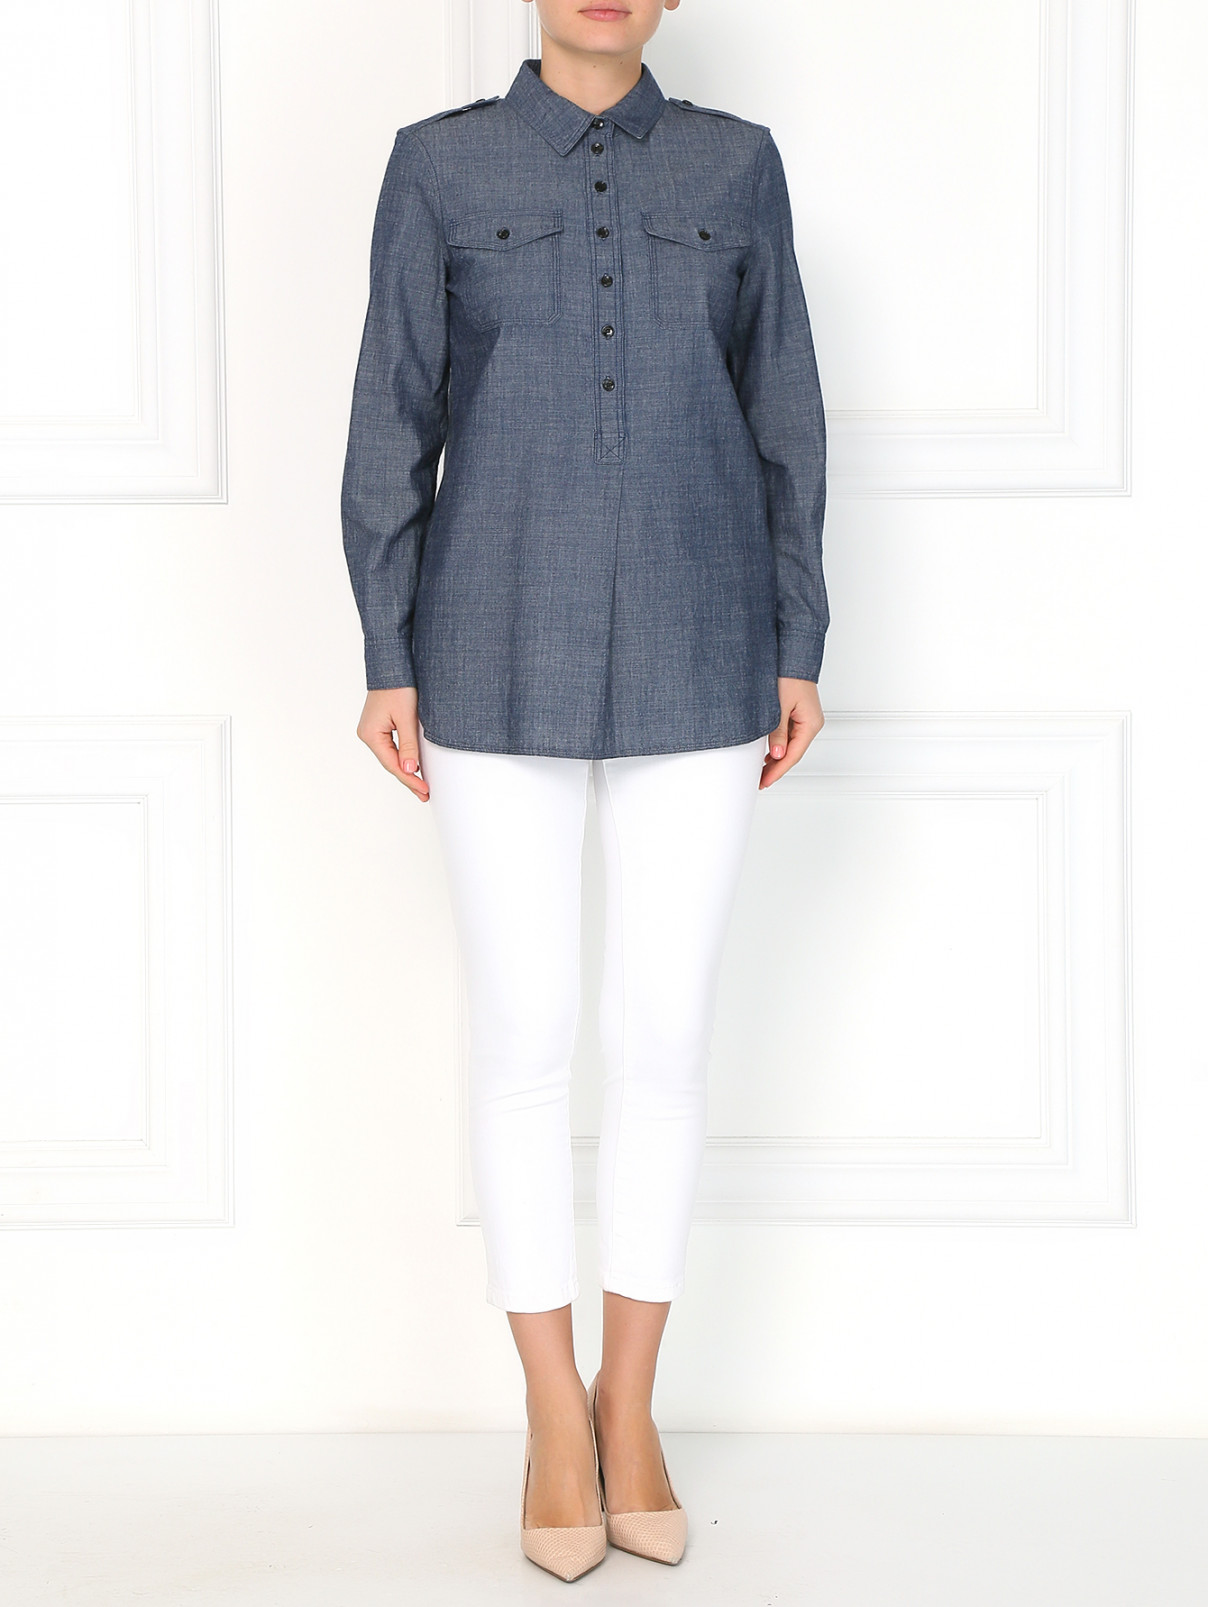 Рубашка из денима с накладными карманами Burberry  –  Модель Общий вид  – Цвет:  Синий